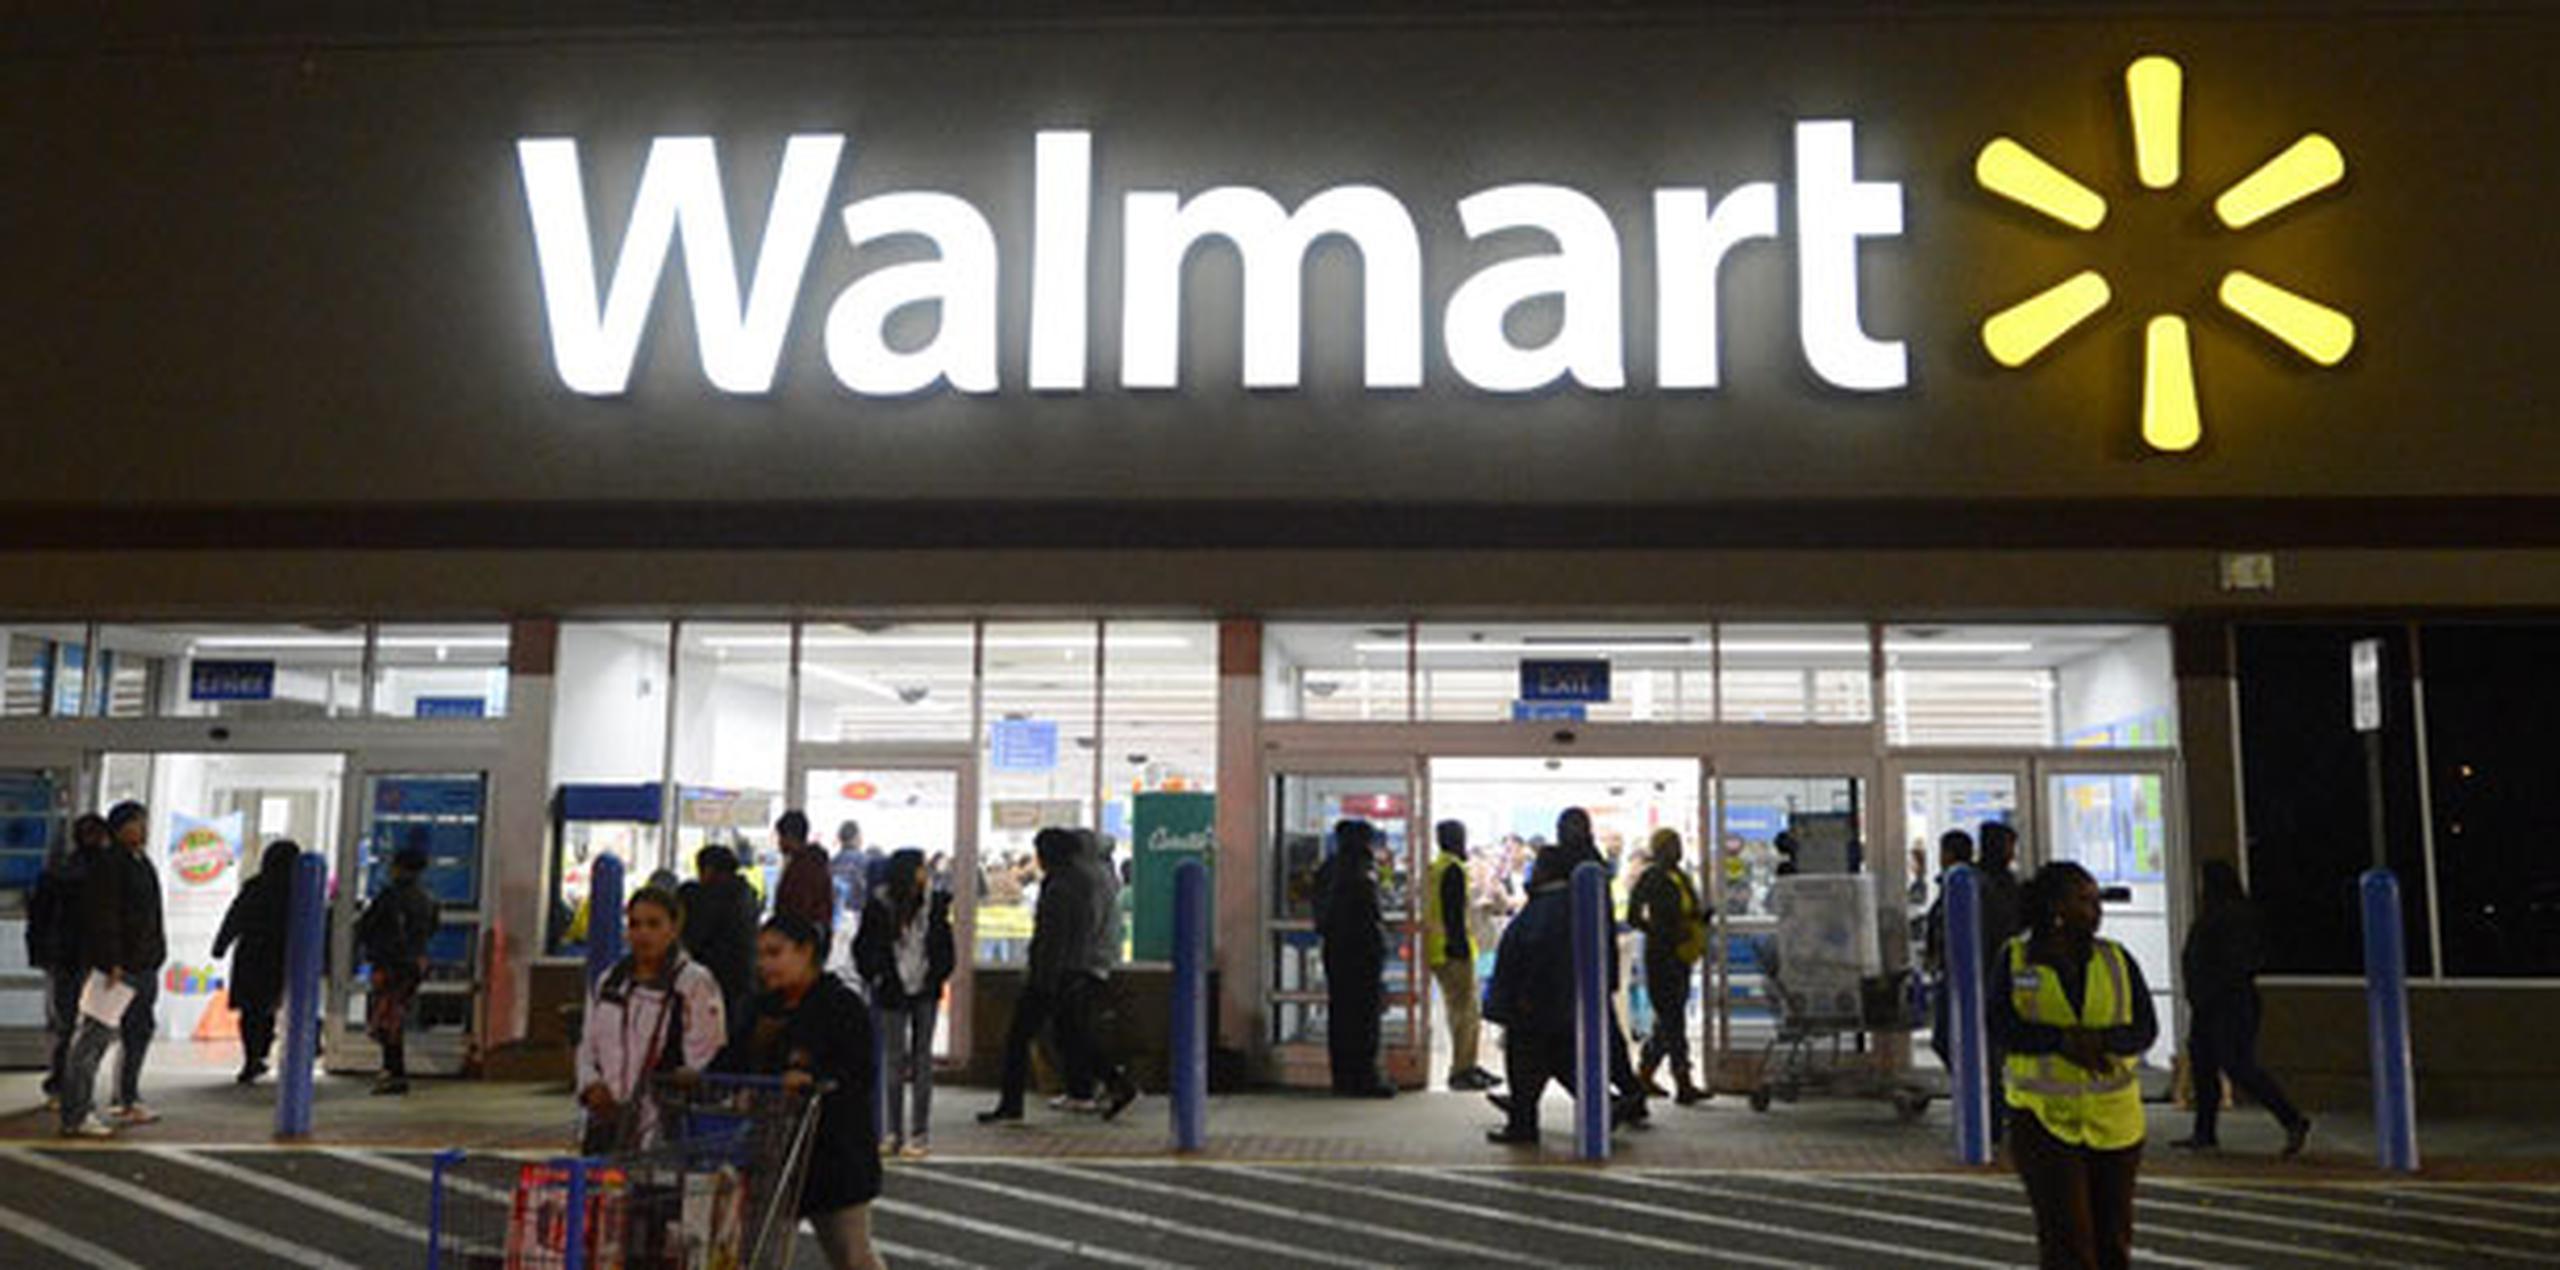 El aumento salarial en Walmart se anunció después de una medida similar por su rival Target Corp. Target aumentó su salario a 11 dólares la hora en octubre y lo aumentará a 15 dólares para 2020. (EFE)